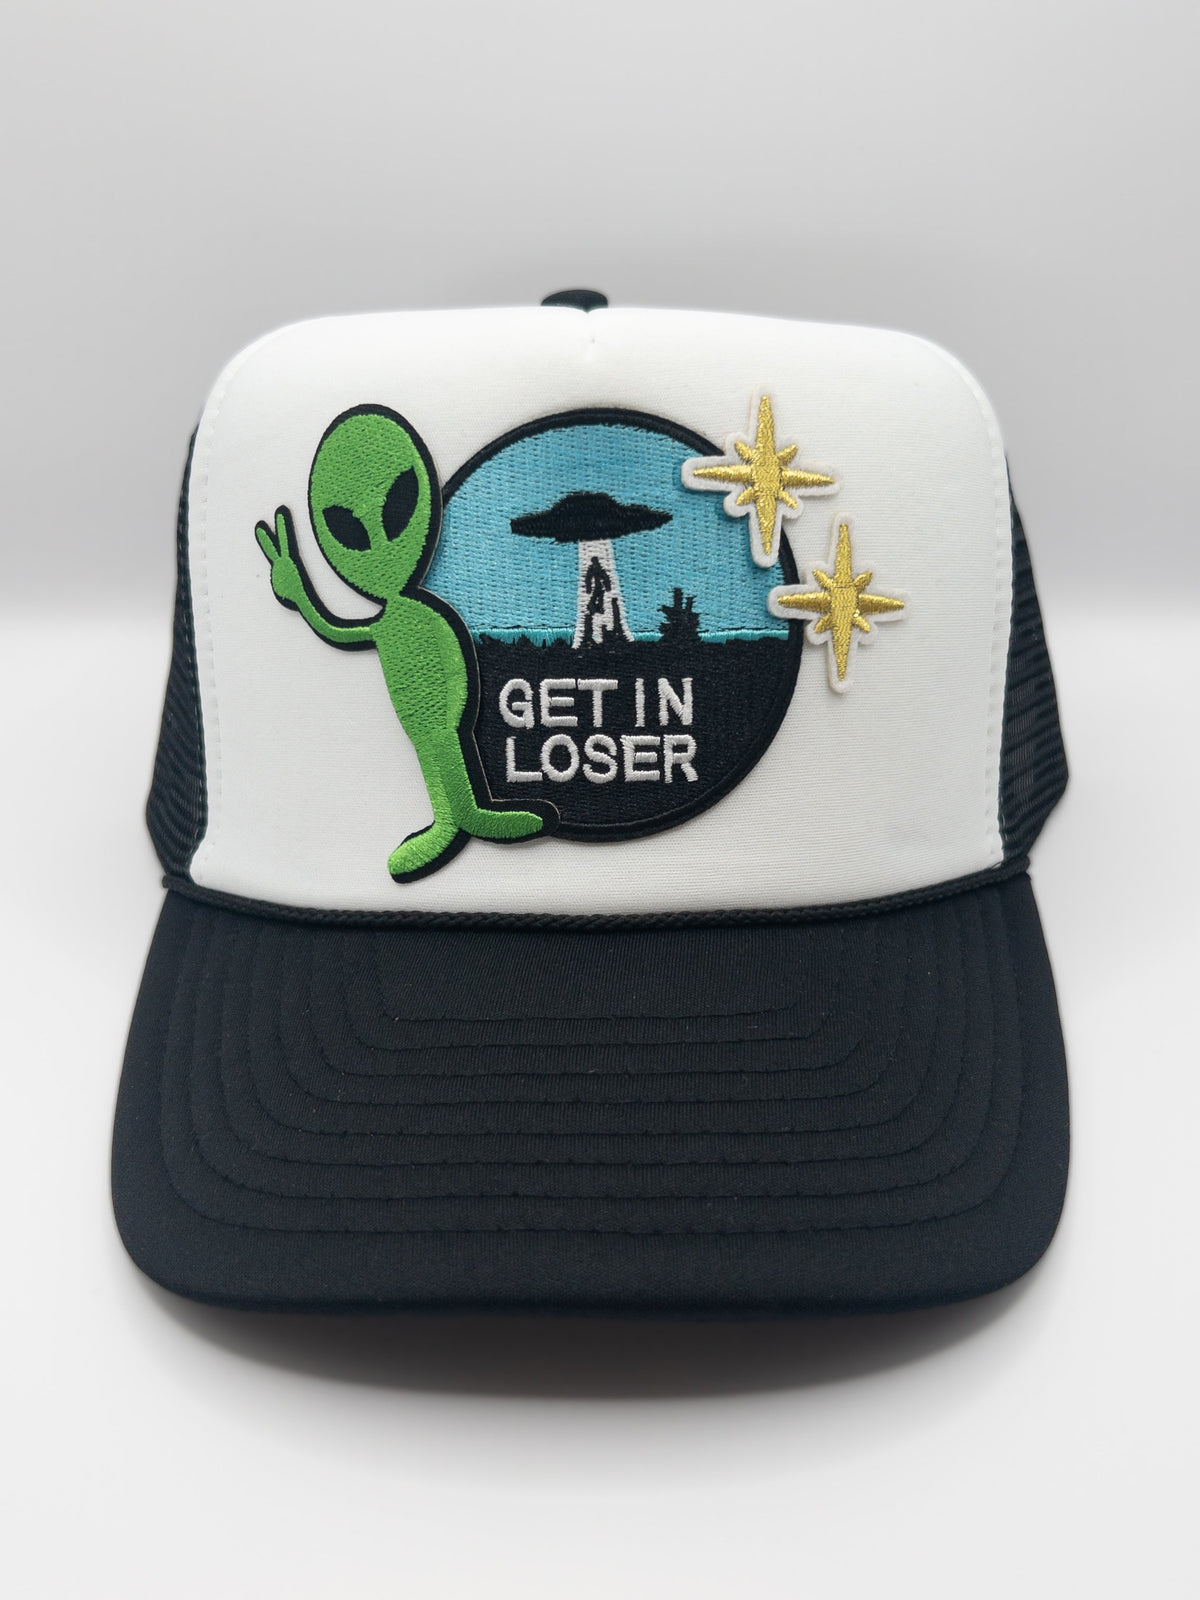 Get In Loser Alien Hat | Patch Trucker Hat | Trendy Trucker Hats Hats TheFringeCultureCollective